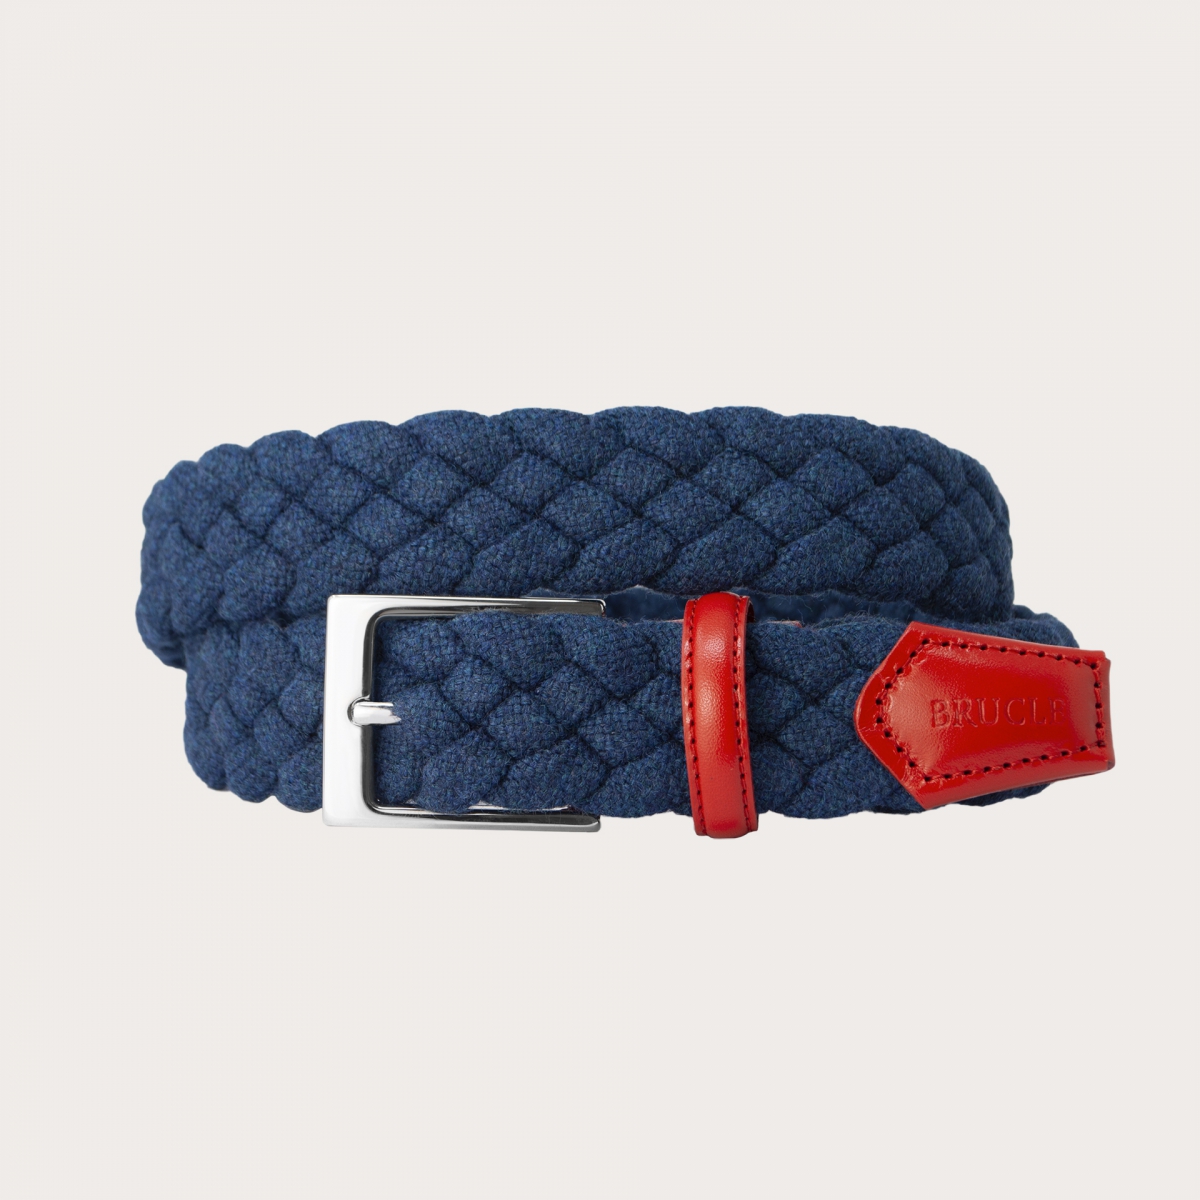 Elastischer geflochtener Wollgürtel, blau mit rot schattiertem Leder